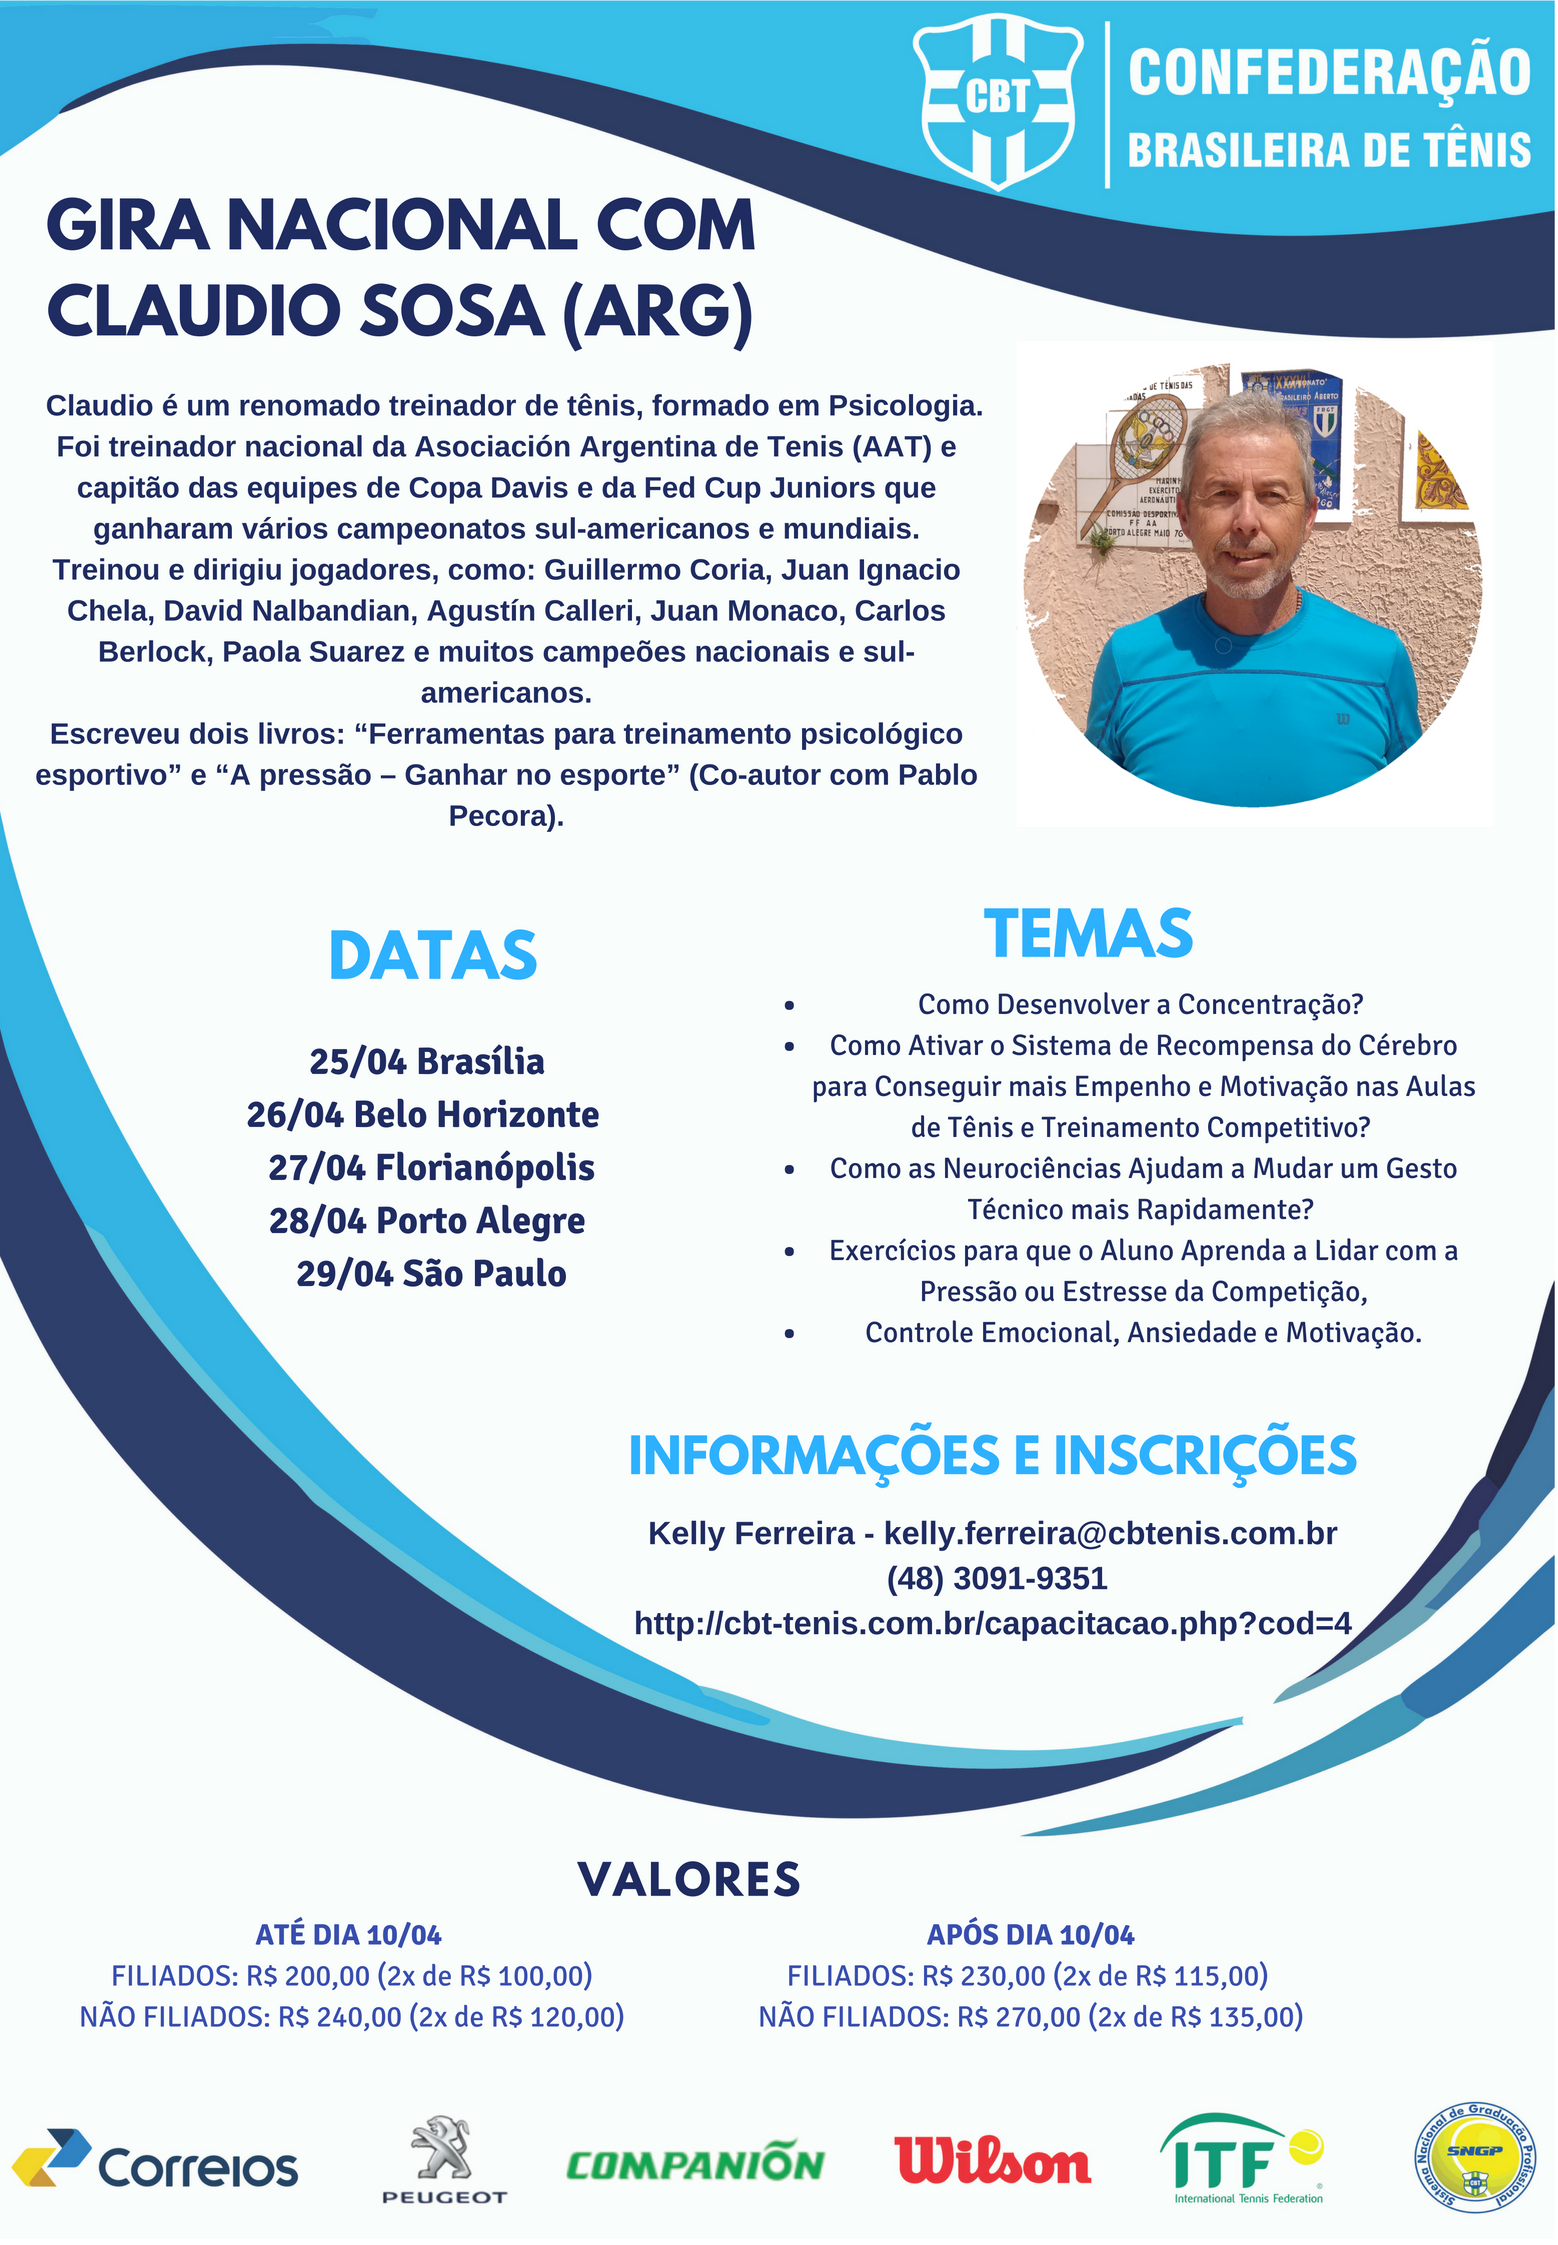 GIRA NACIONAL COM CLAUDIO SOSA (ARG) - EM FLORIANÓPOLIS 27/04/2018